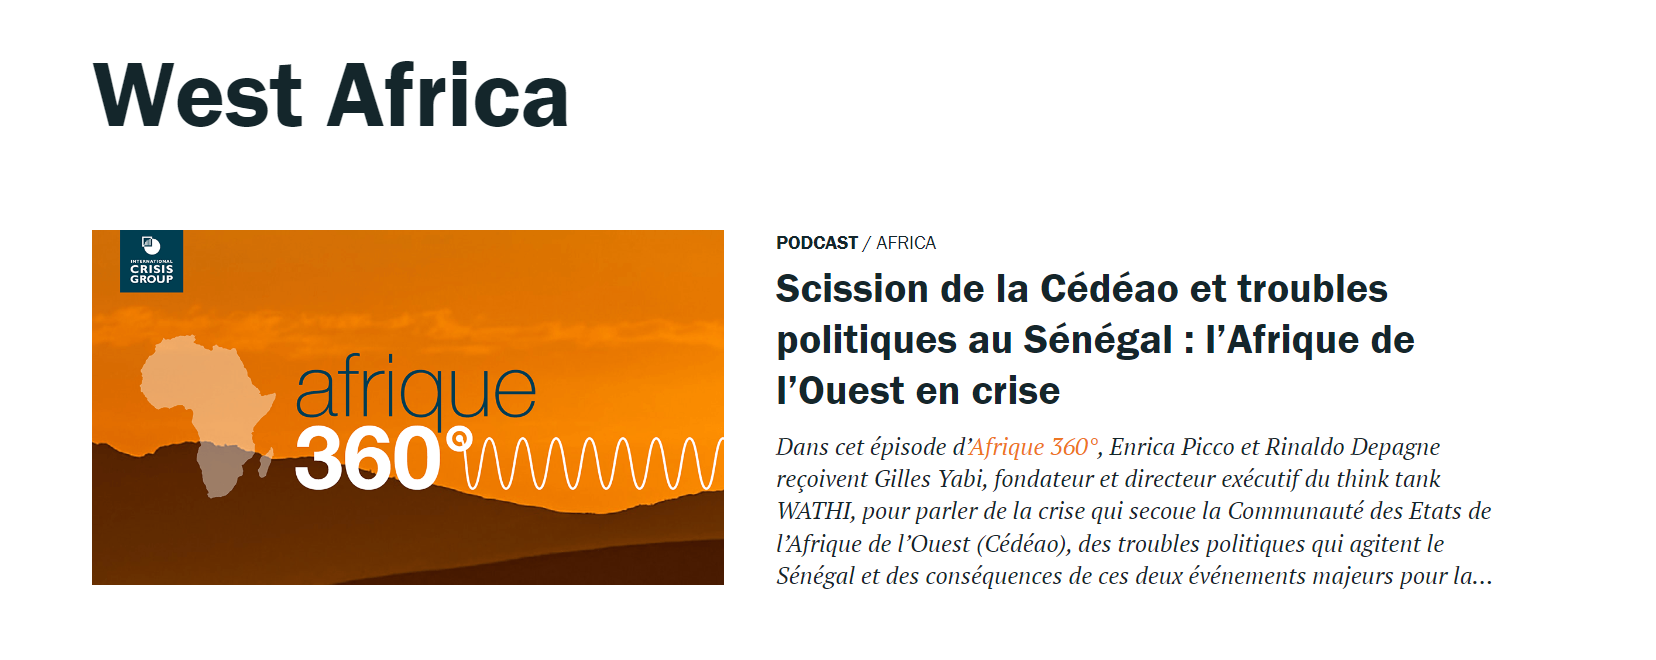 Miniature Afrique 360°: Épisode 6 : Scission de la Cédéao et troubles politiques au Sénégal : l’Afrique de l’Ouest en crise